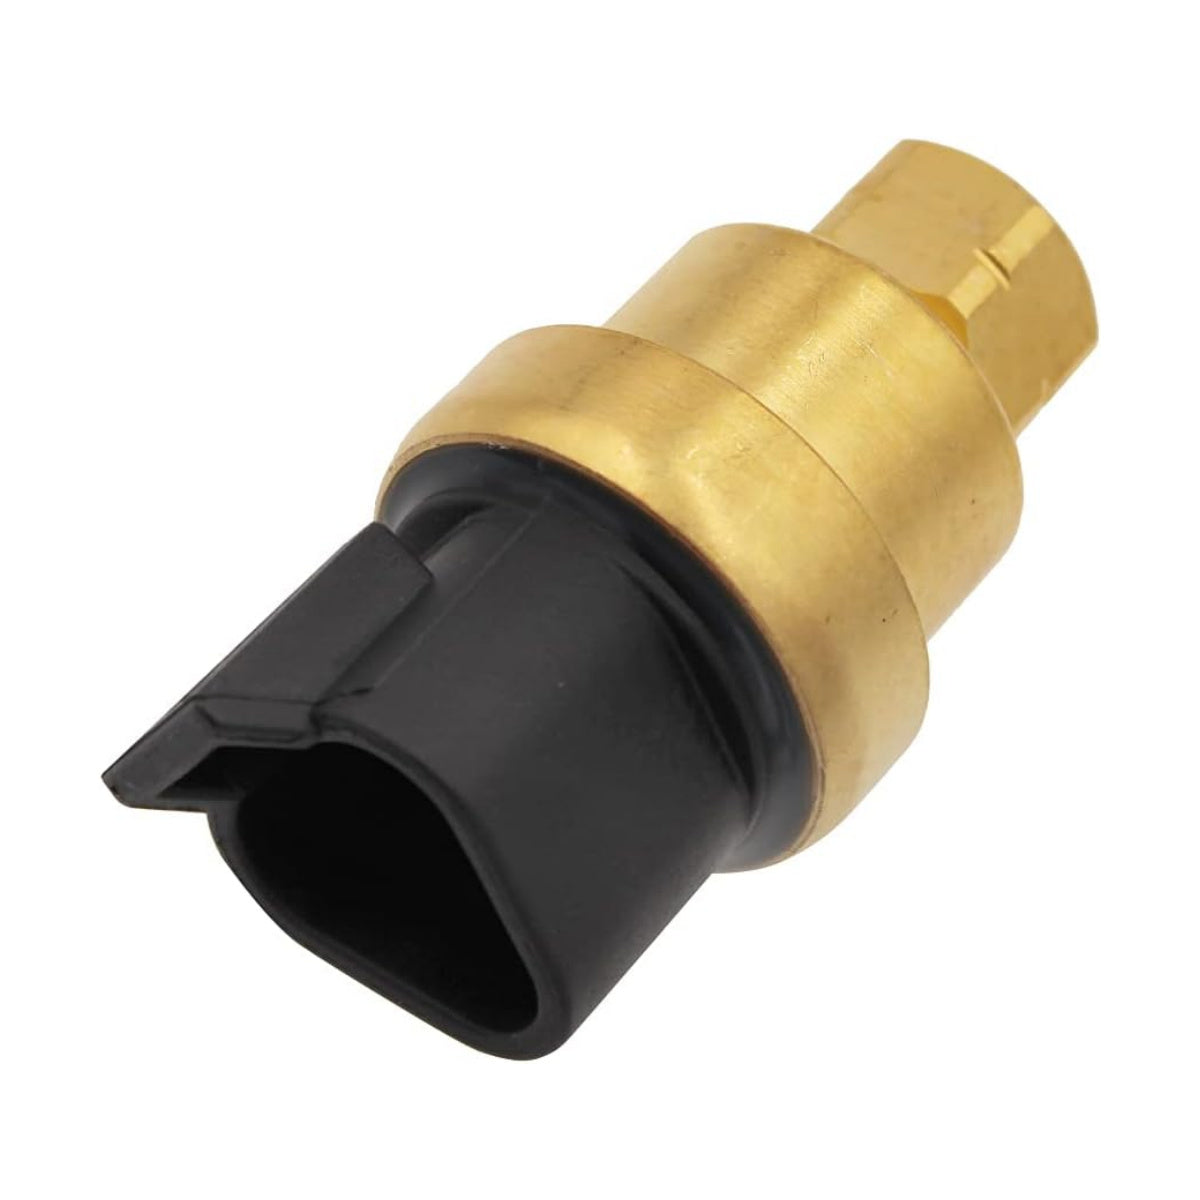 161-1705 197-8397 Oil Pressure Sensor for CAT E330C - Sinocmp